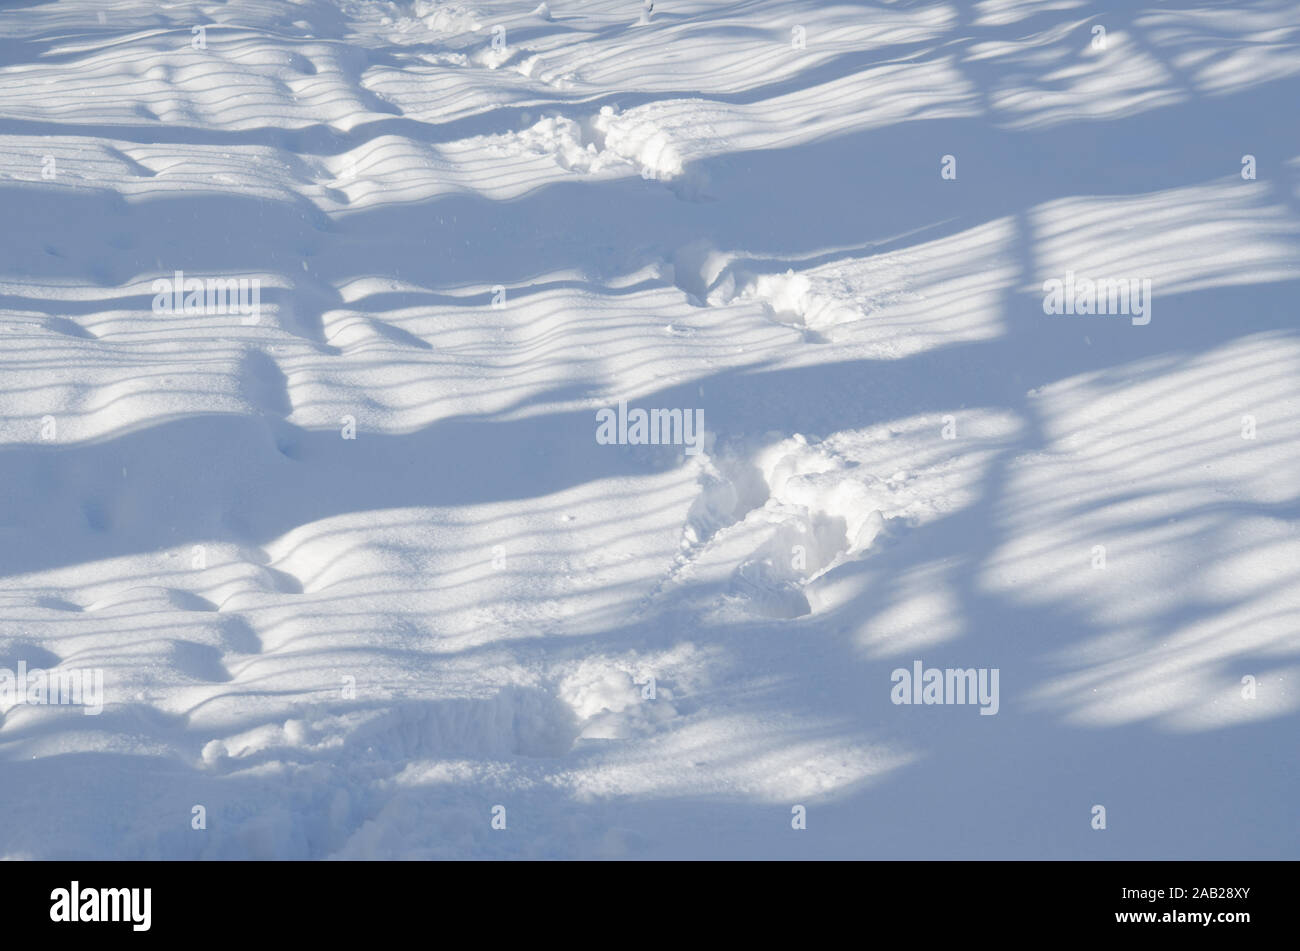 Las trazas y las sombras sobre el ventisquero. Resumen del paisaje invernal. Foto de stock